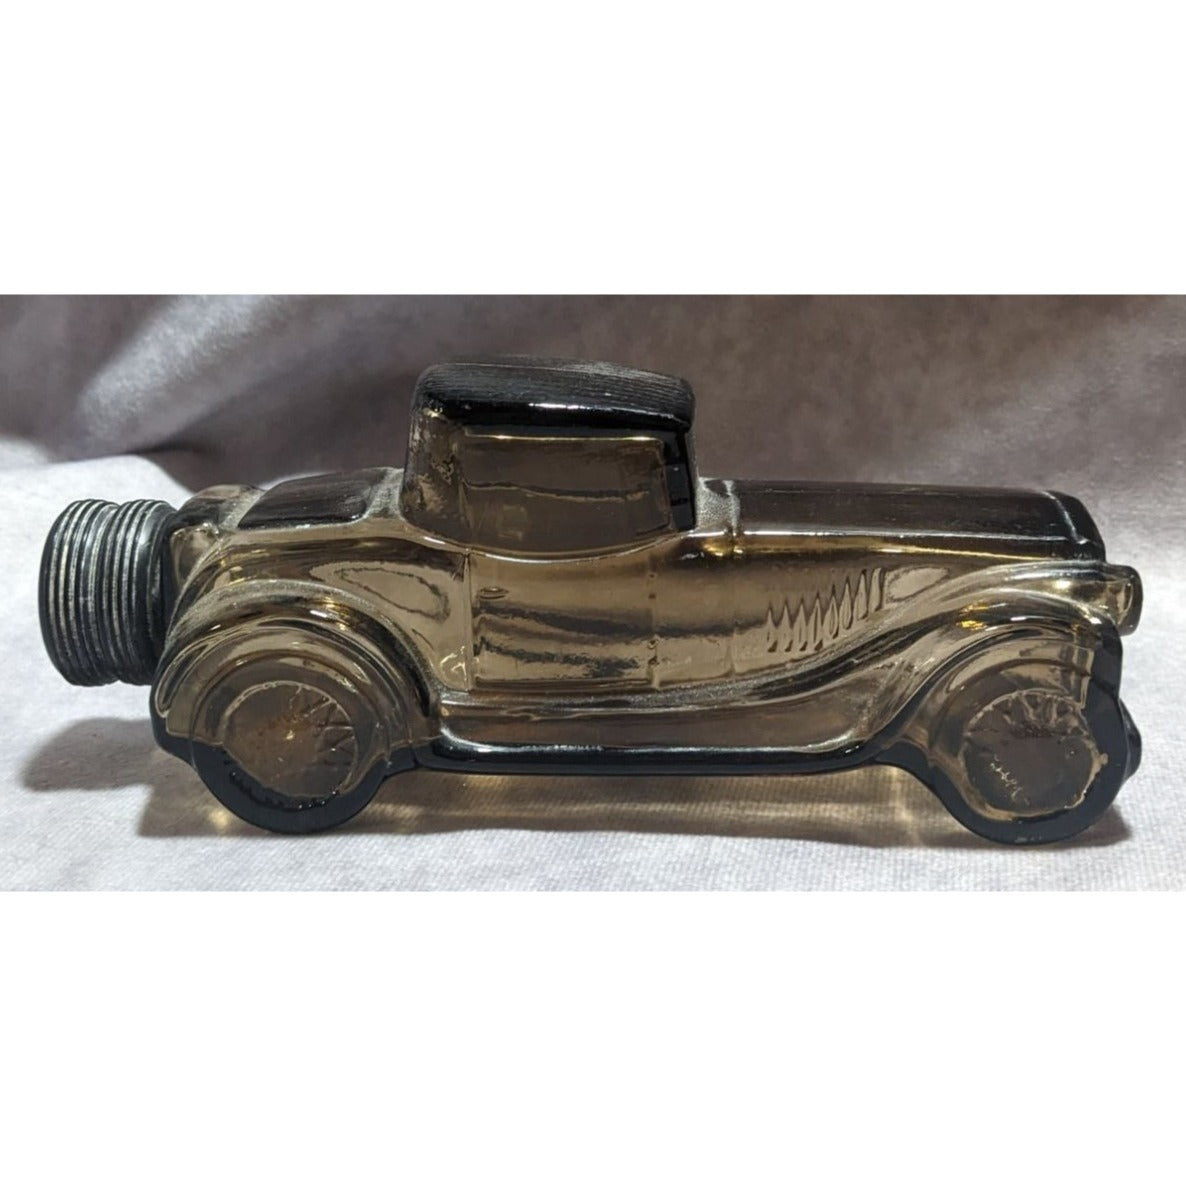 Vintage Avon Glass Car Aftershave Bottle